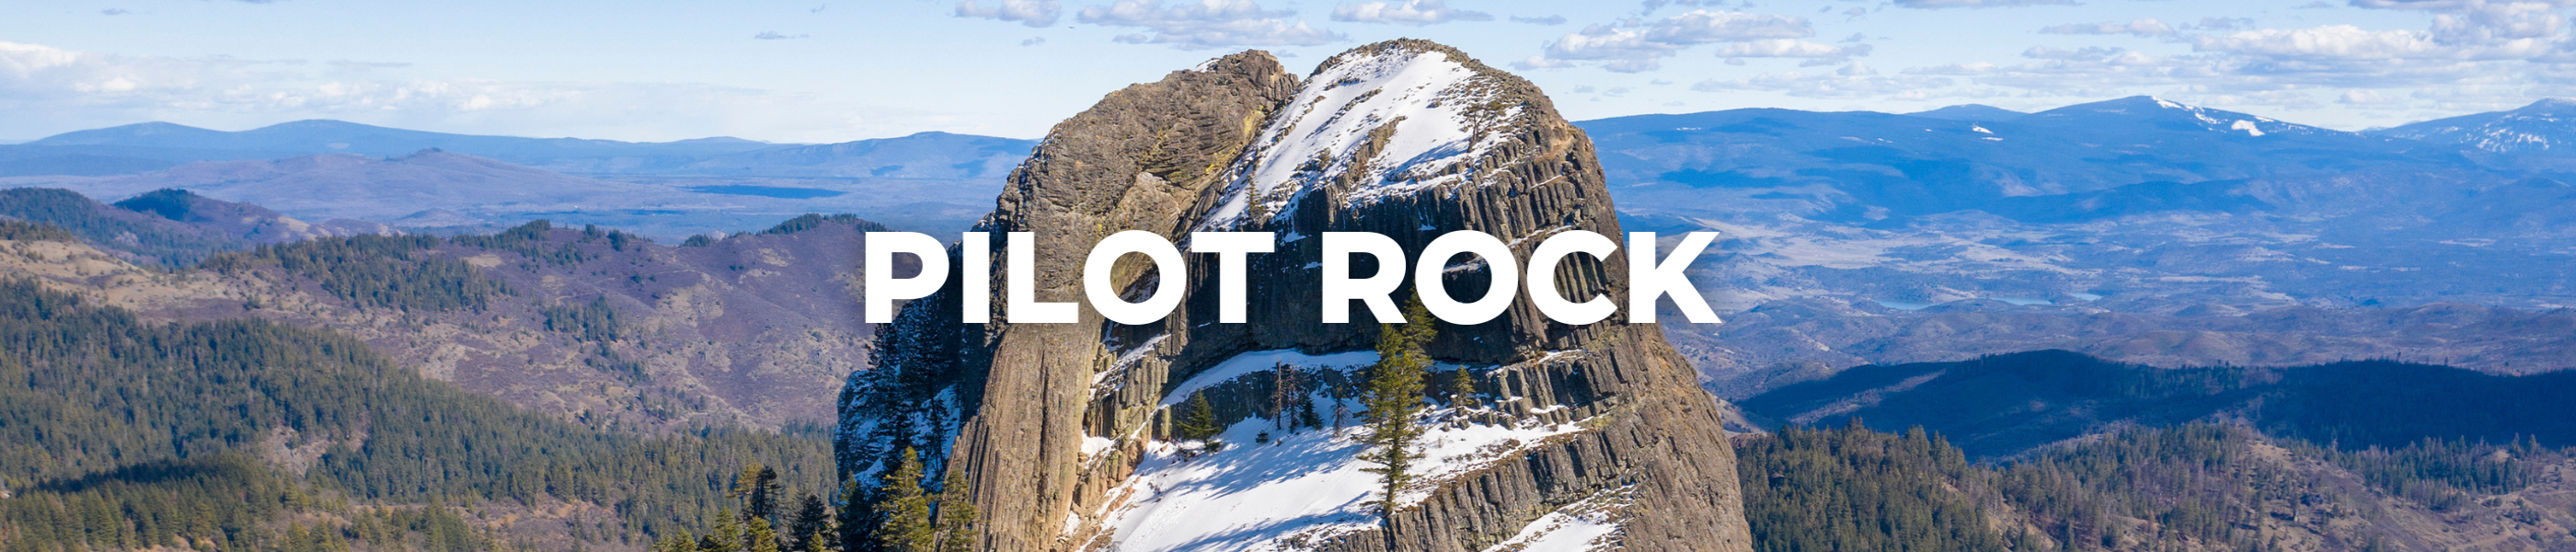 Pilot Rock Blog Header